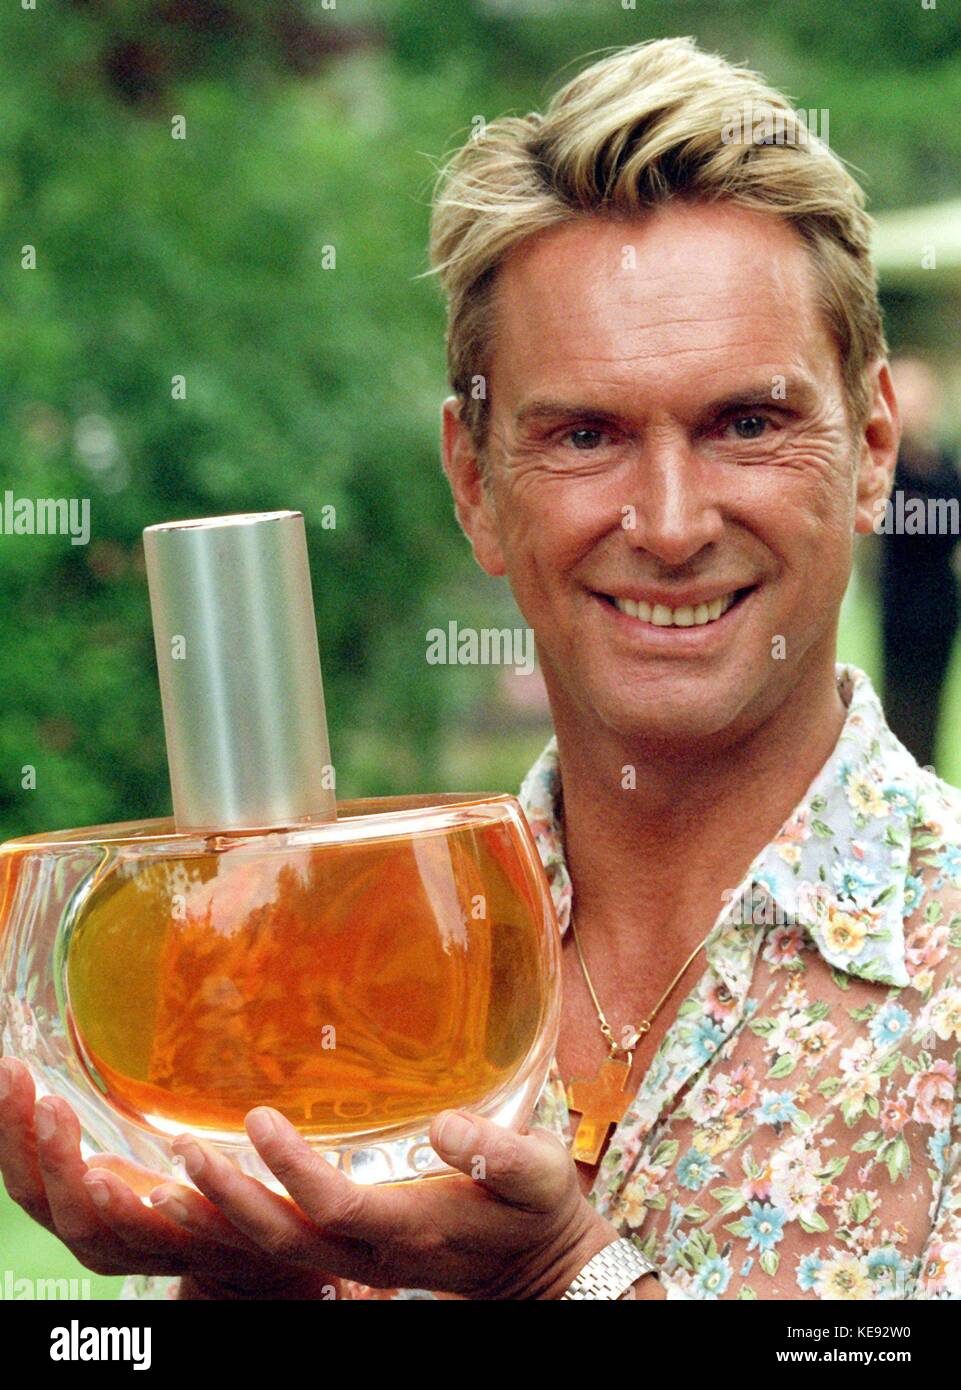 Deutsche Modedesigner Wolfgang Joop vorhanden sein neues Parfum mit einem  Modell im rokoko Stil Kostüm im Garten seiner Eltern in Potsdam  (Brandenburg, Deutschland) am 24. Juni 1999. joop Inviten mehr Thant 160